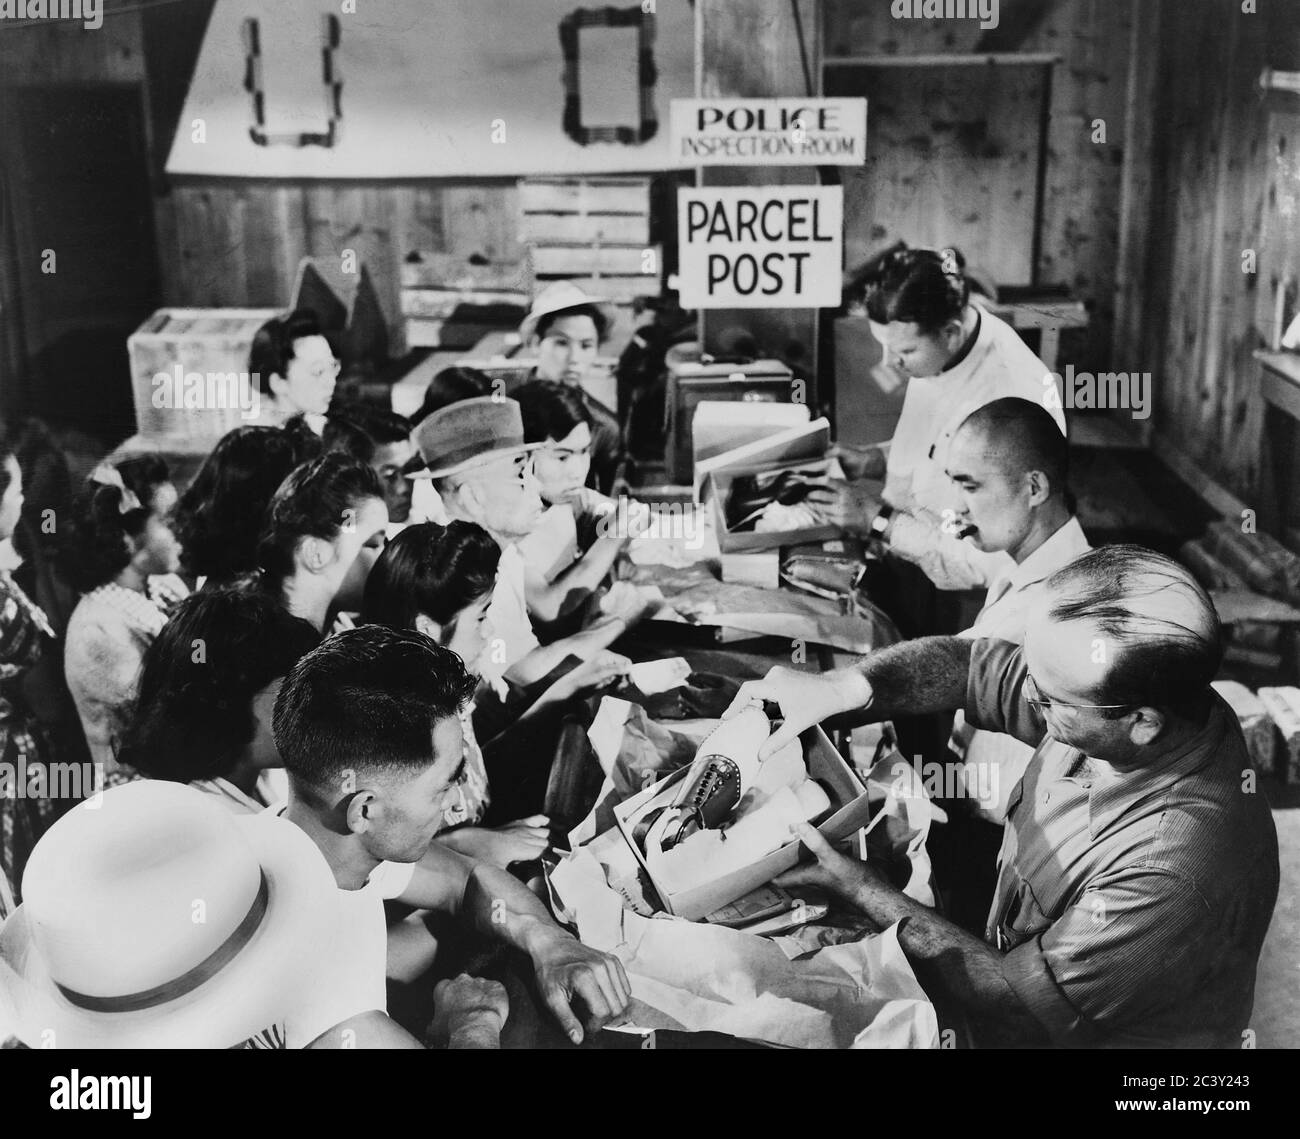 Les Japonais américains se réunissent dans la salle d'inspection de la police pour recevoir des colis qui sont inspectés au centre de détention de Stockton, Californie, États-Unis, U.S. Army signal corps, 1942 Banque D'Images